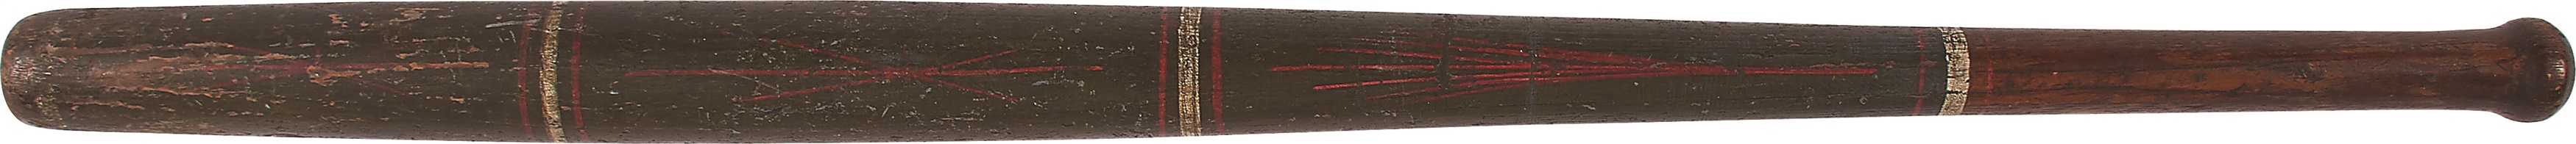 - 1860s Folk Art Handpainted Ringed Baseball Bat